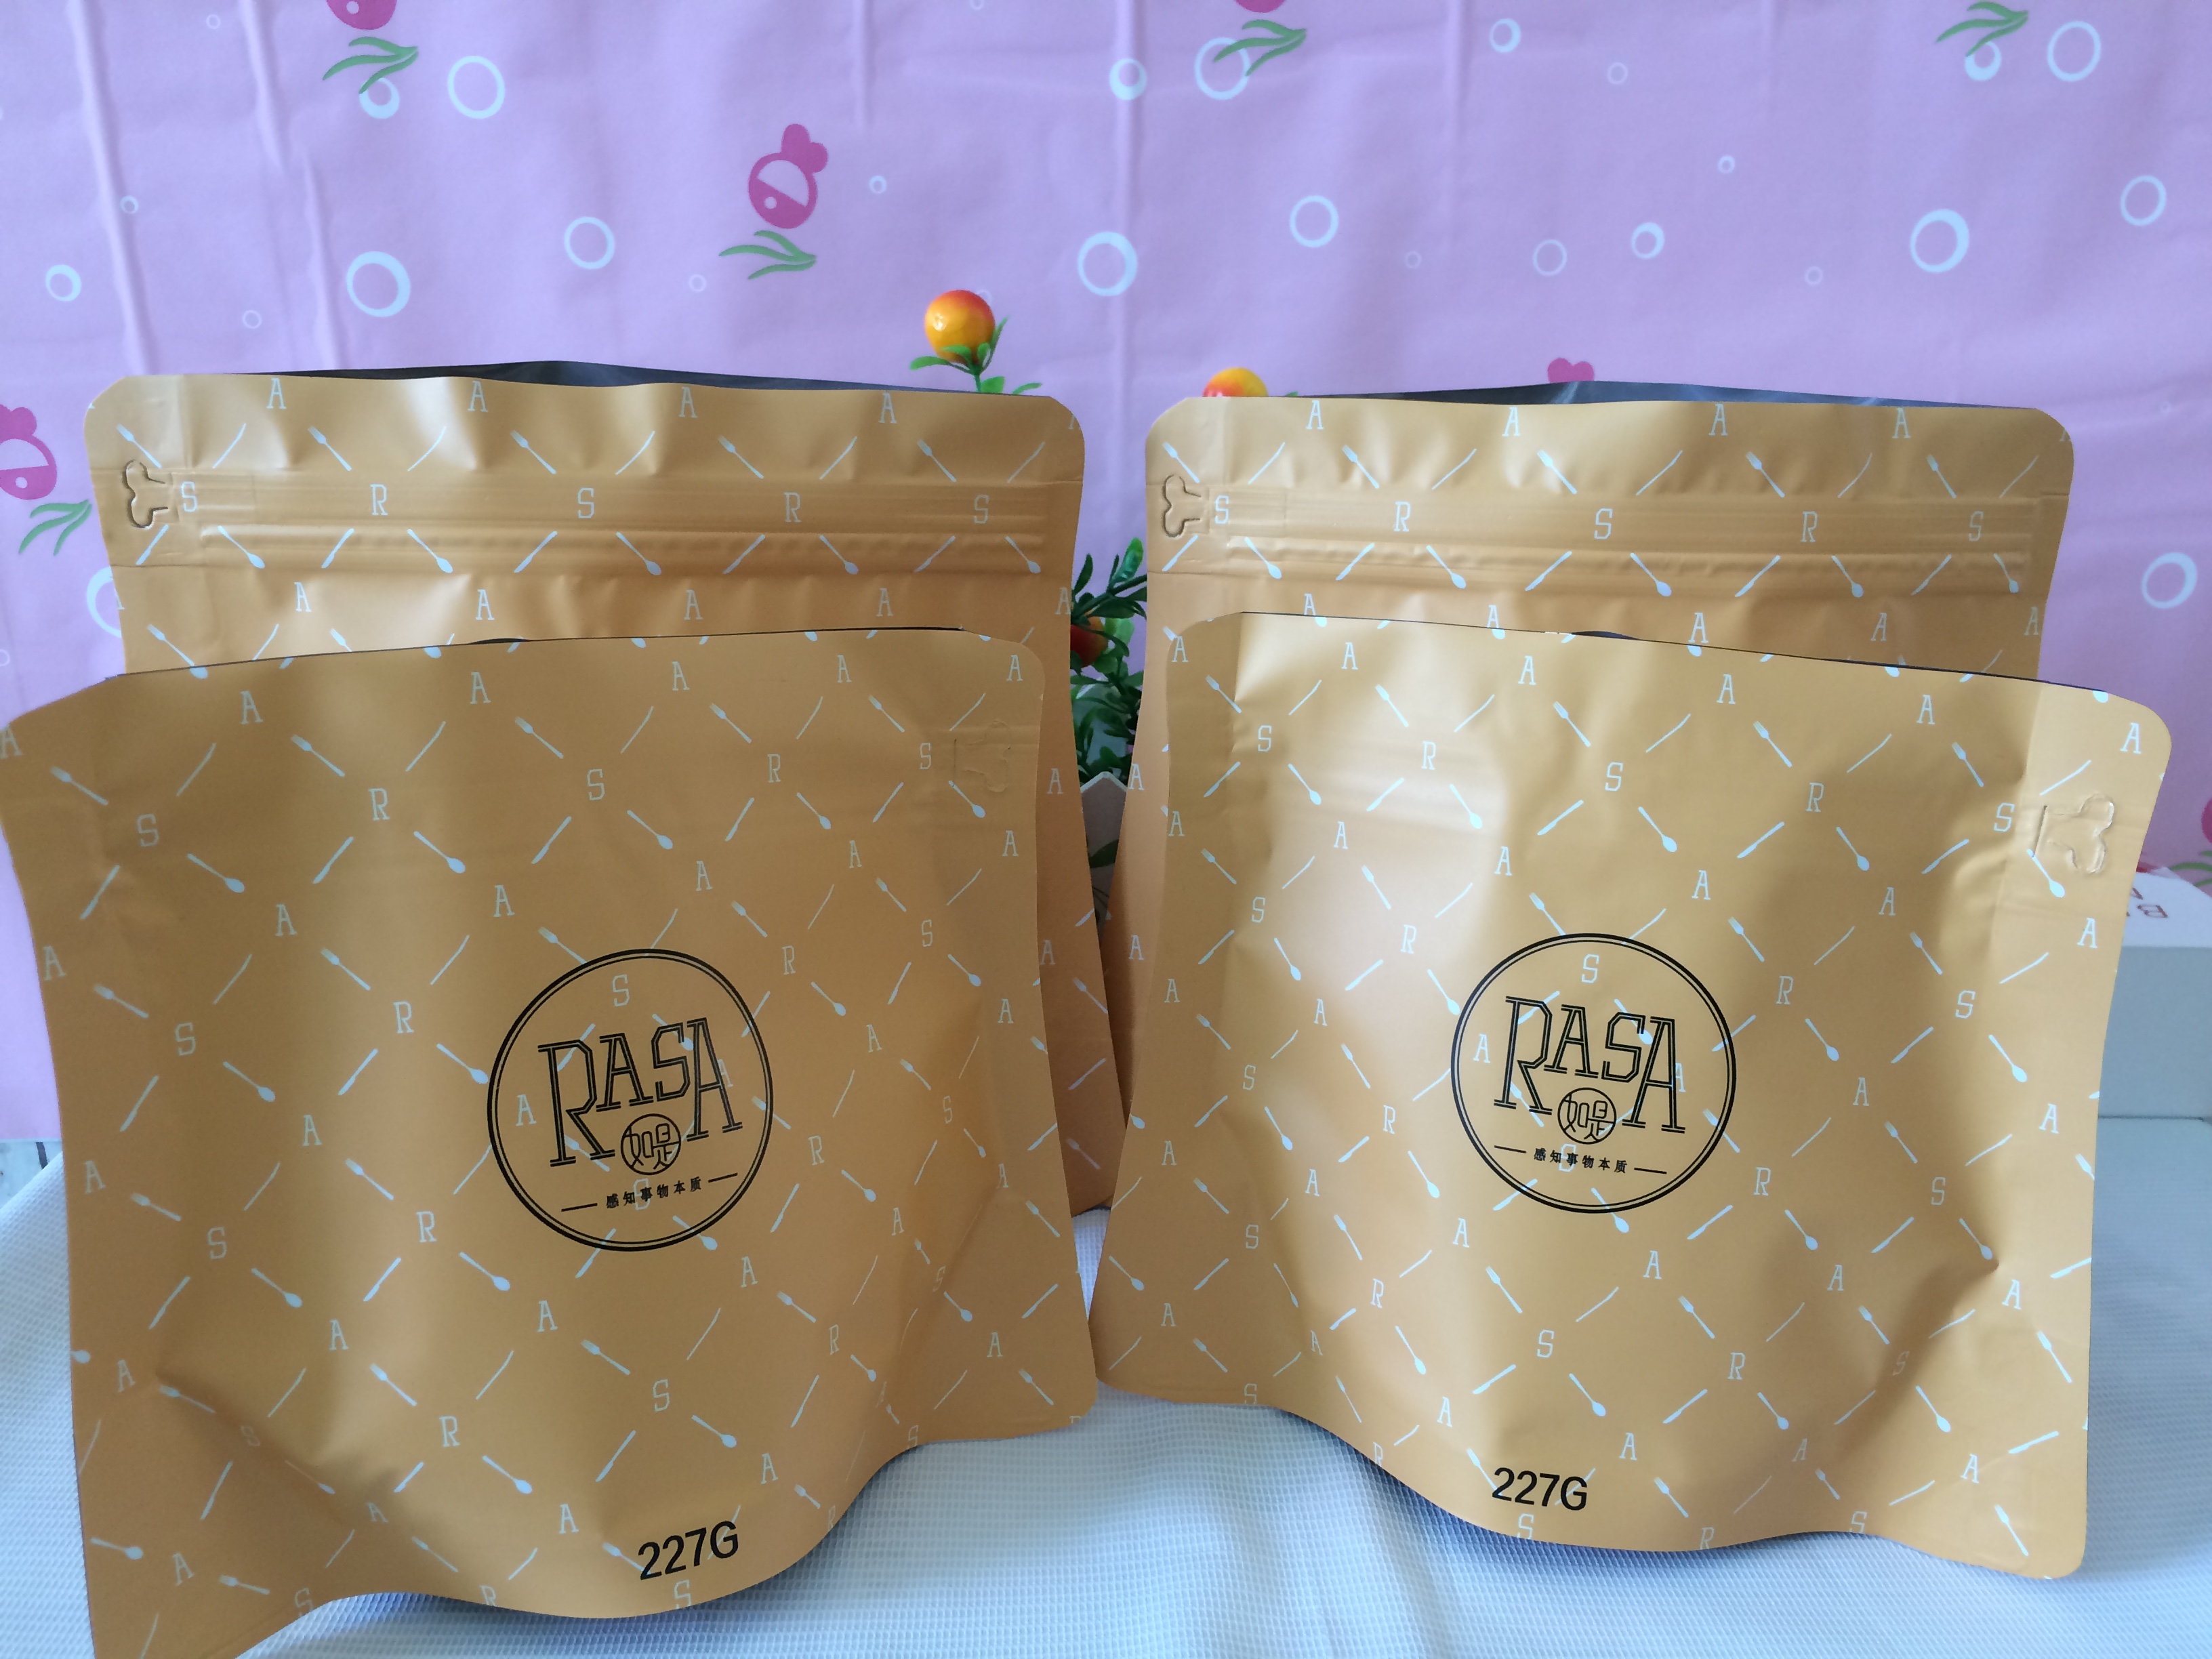 潮州咖啡包装袋厂家定做、批发、价钱、供货商【潮州市潮安区金石恒星包装厂】